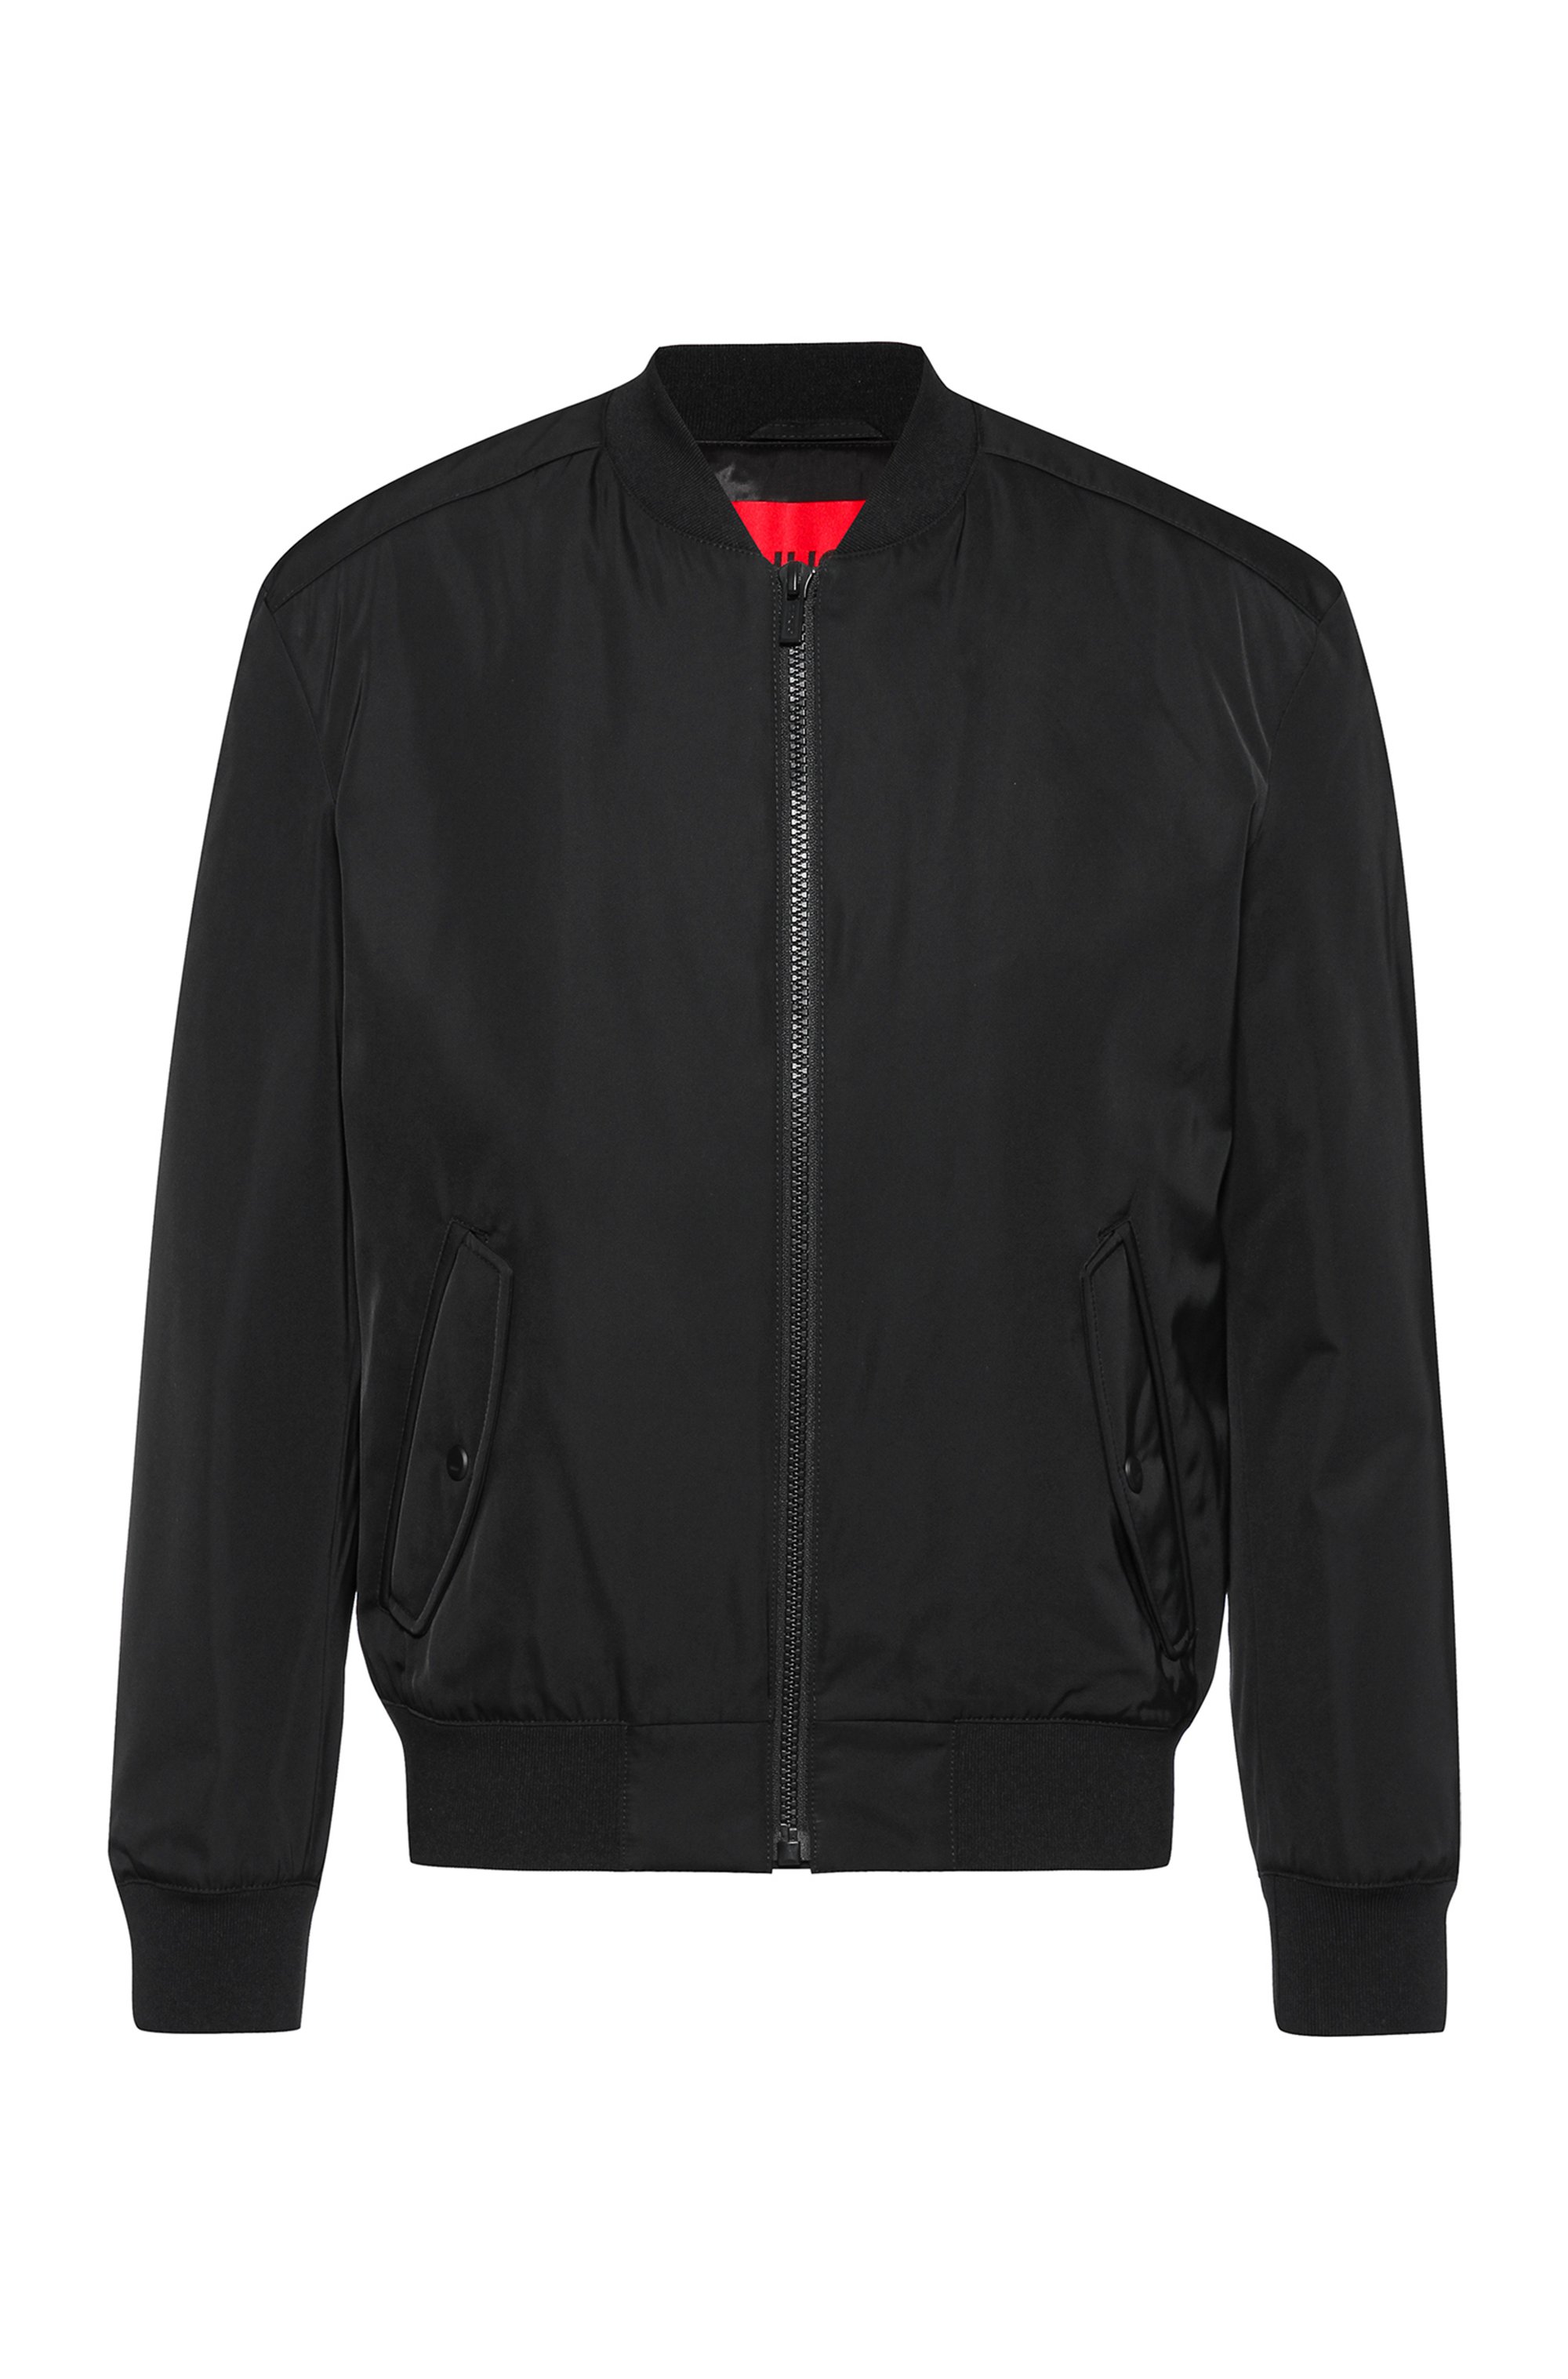 Regular-fit bomber jacket with red logo label, Black